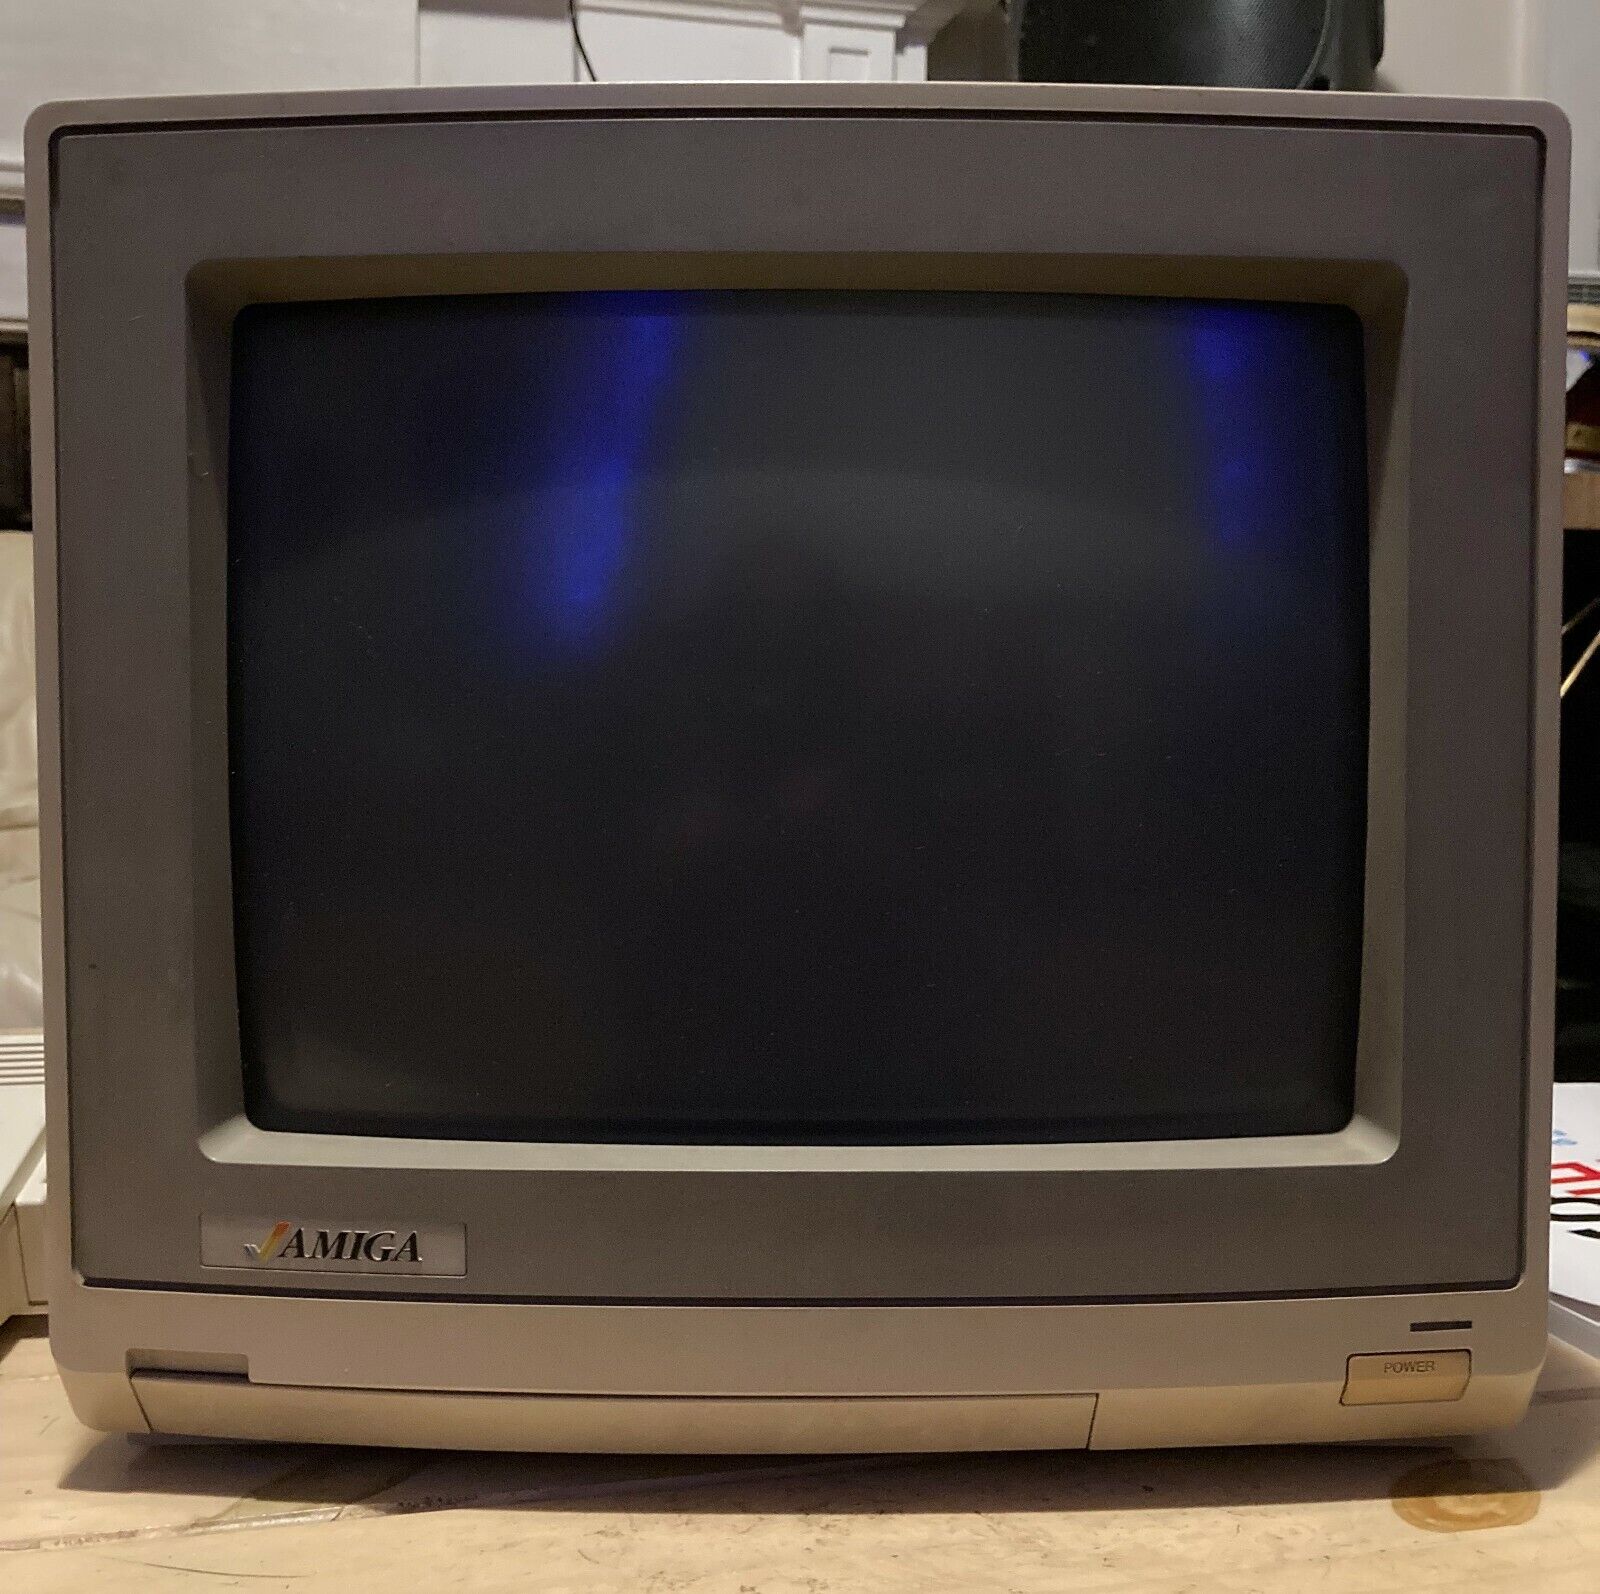 Commodore Amiga 1080 computer monitor